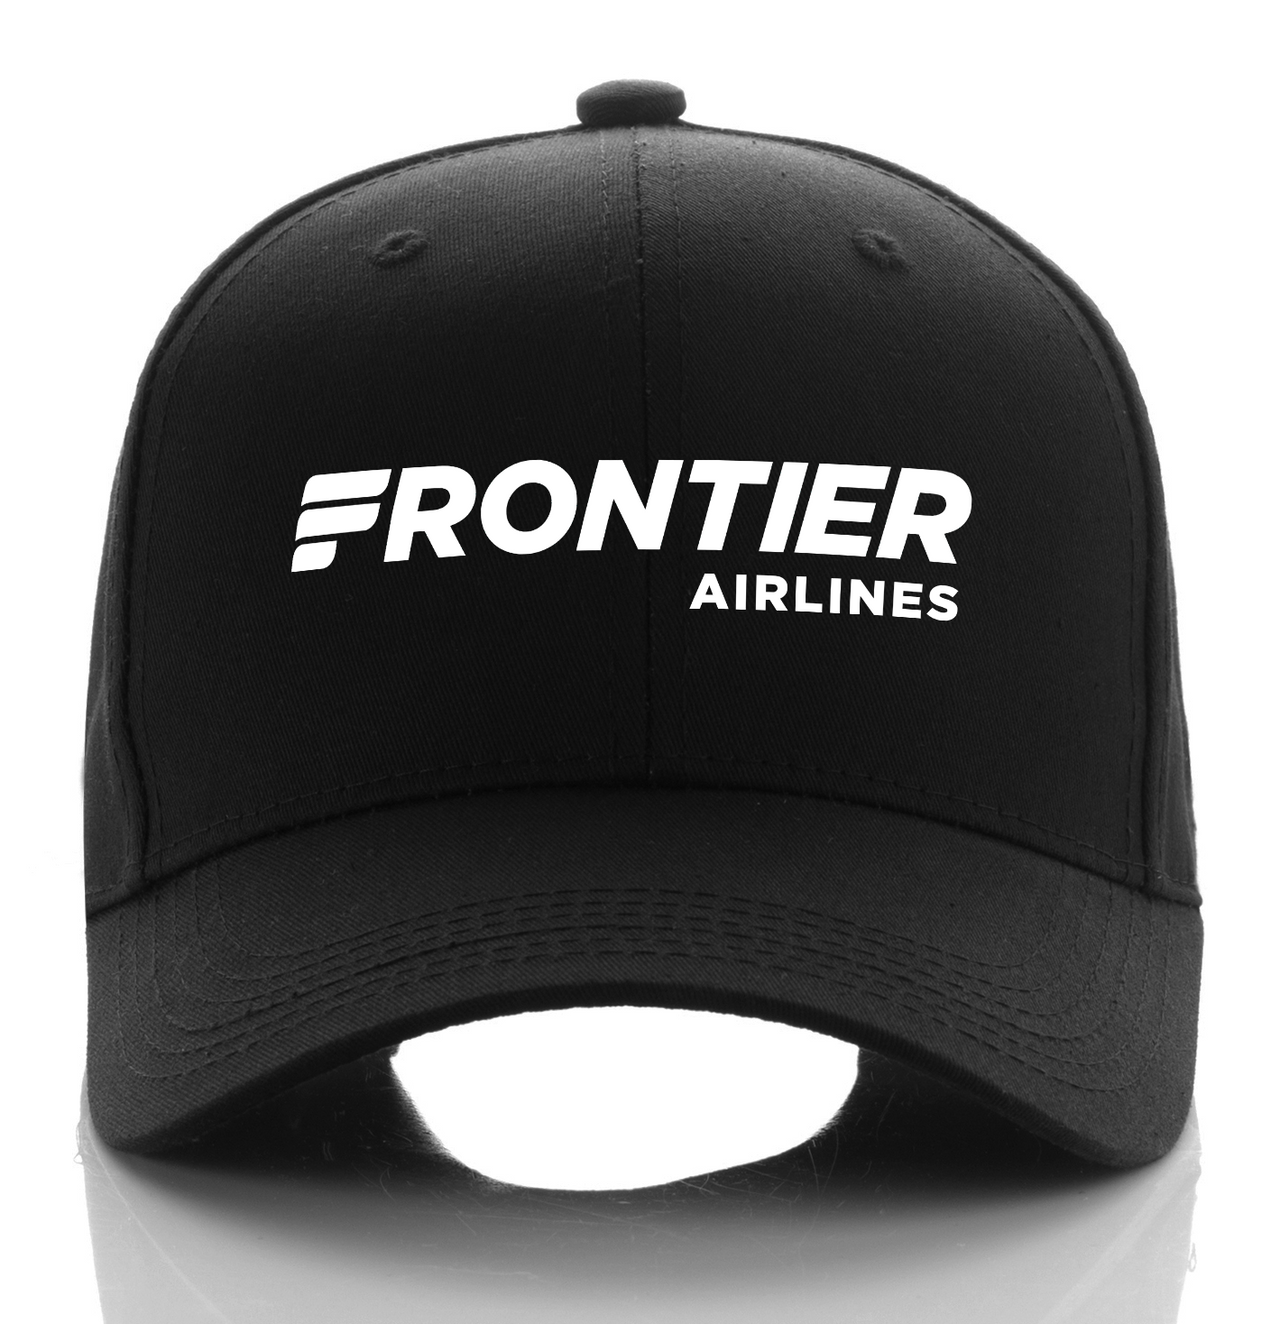 FRONTIER AIRLINE DESIGNED CAP